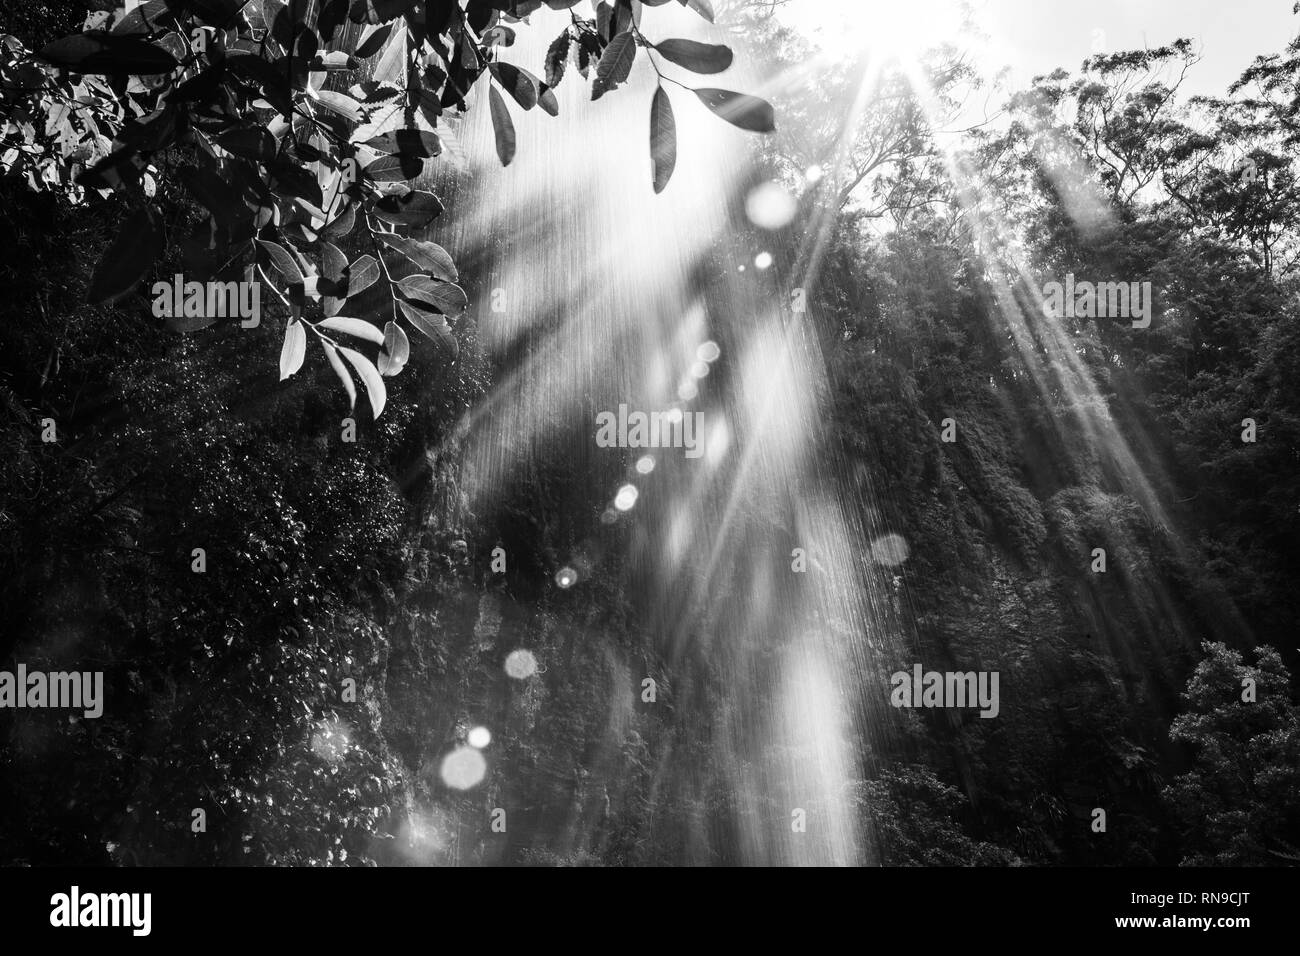 Sole con lens flare brilla attraverso la cascata nella giungla. Immagine in bianco e nero Foto Stock